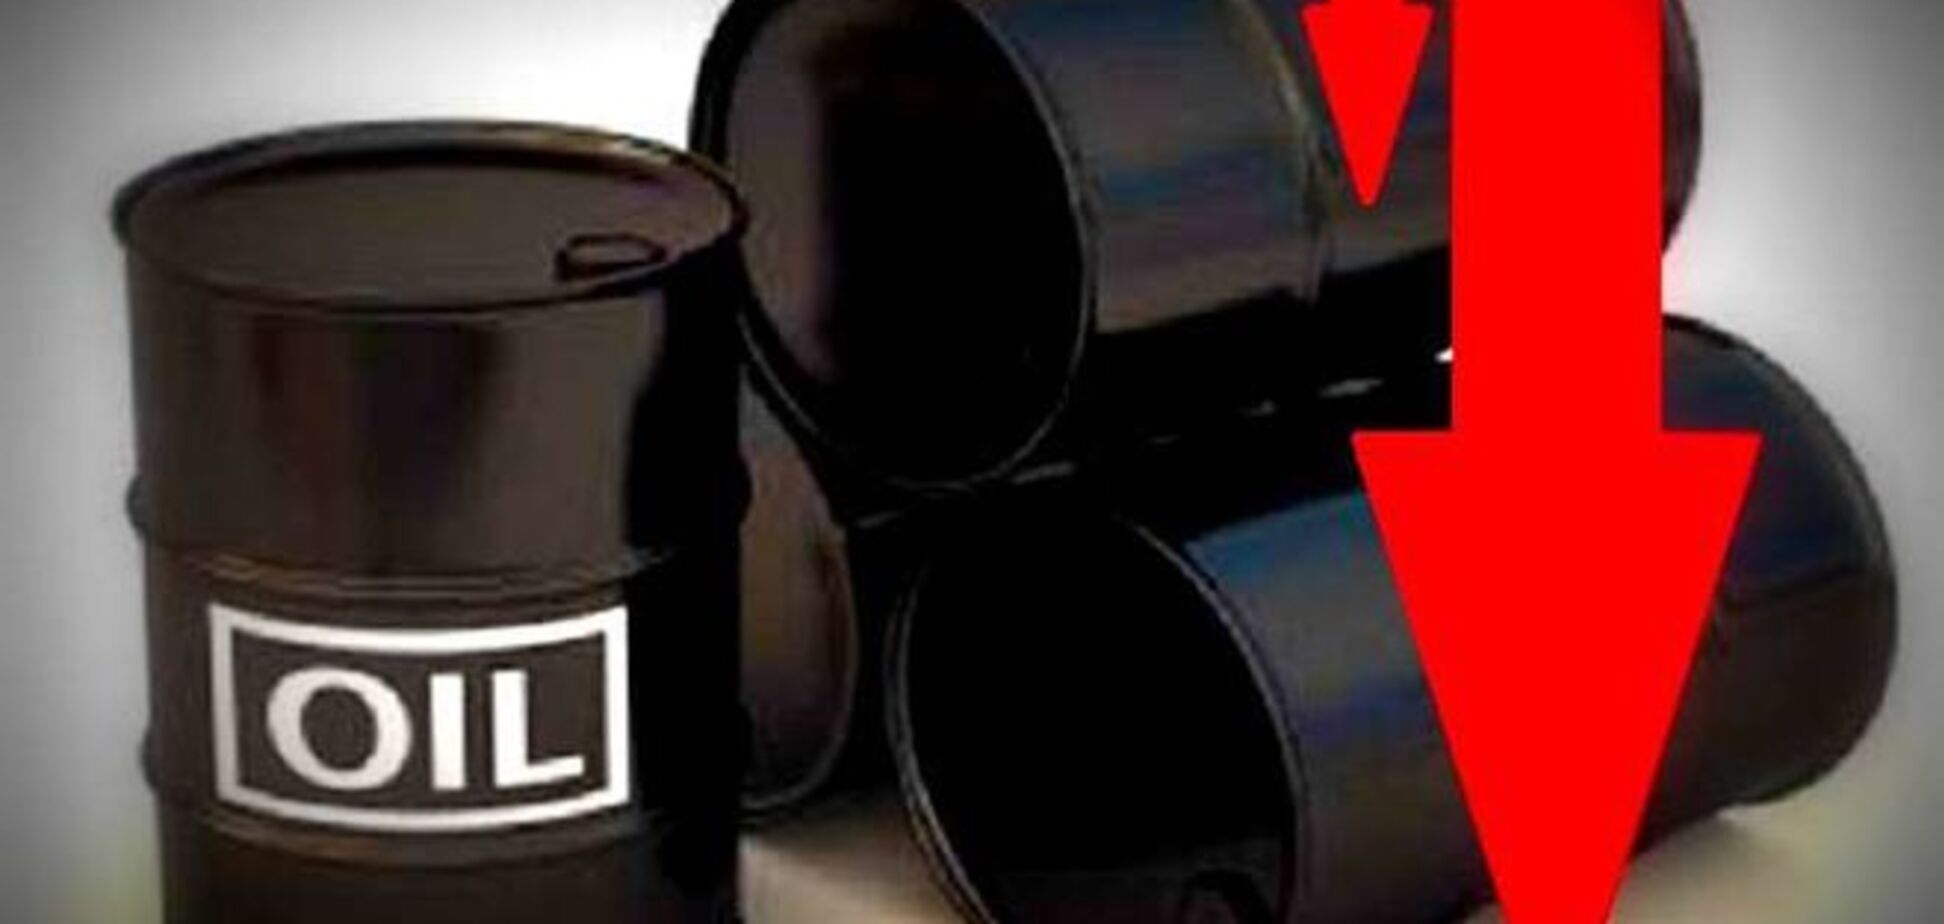 Цена на нефть ОПЕК упала ниже $55 за баррель